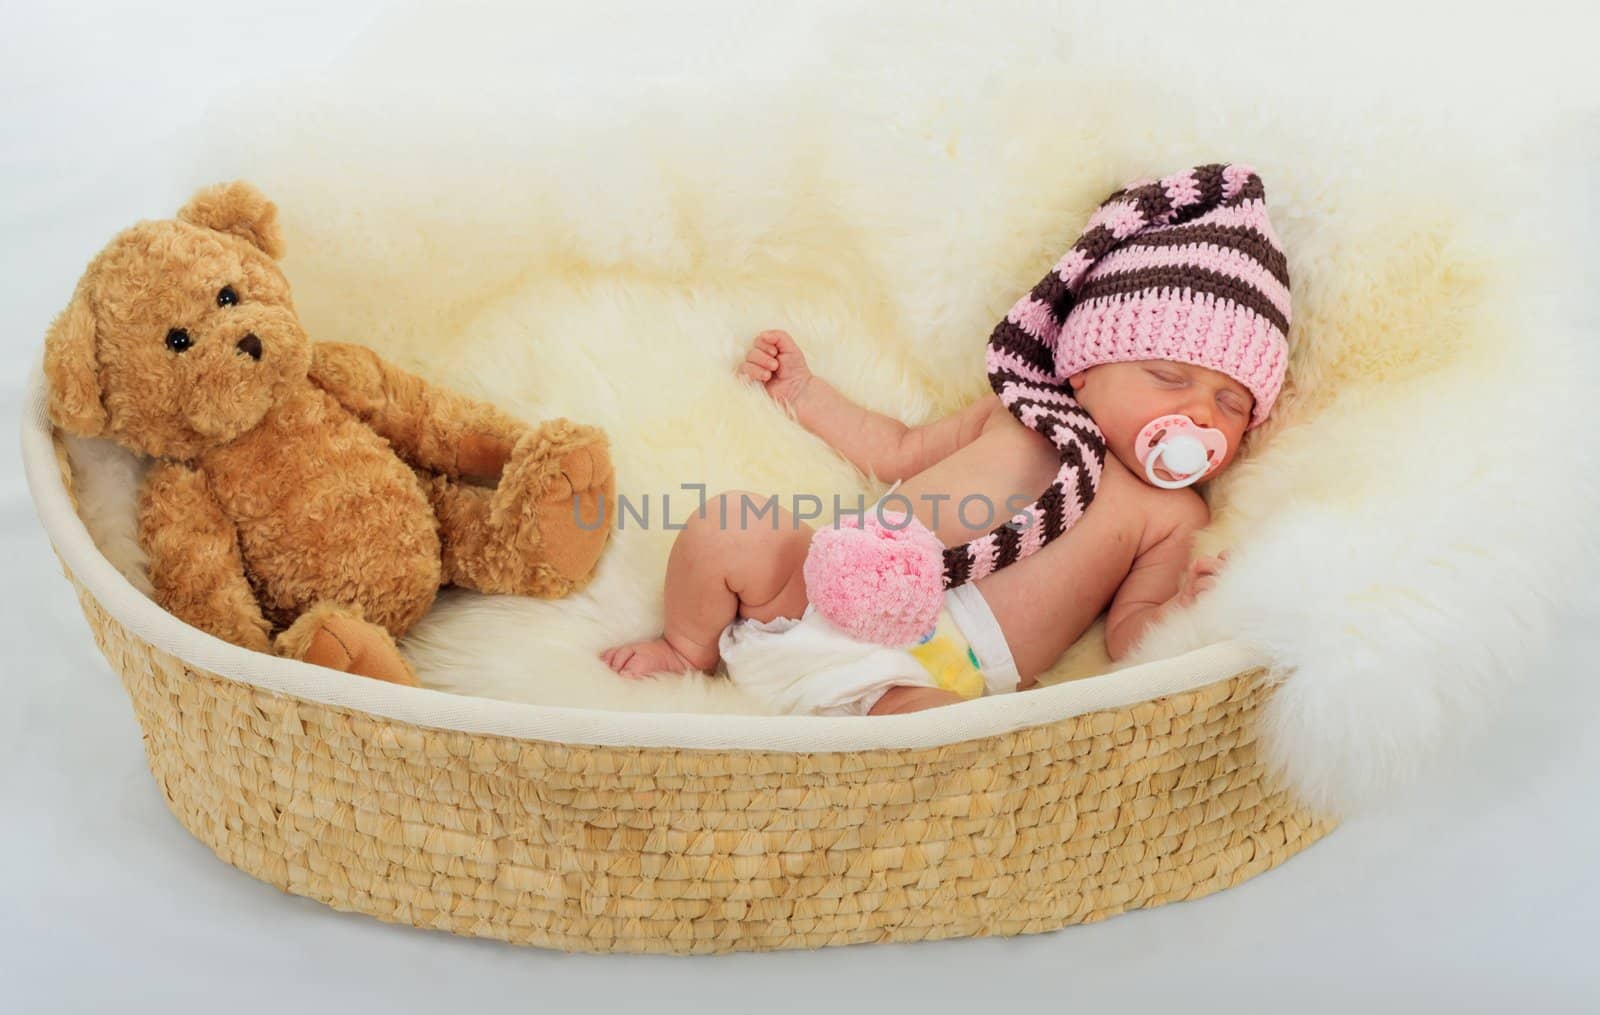 infant sleeping on a white sheepskin in a wicker basket. by sk11303